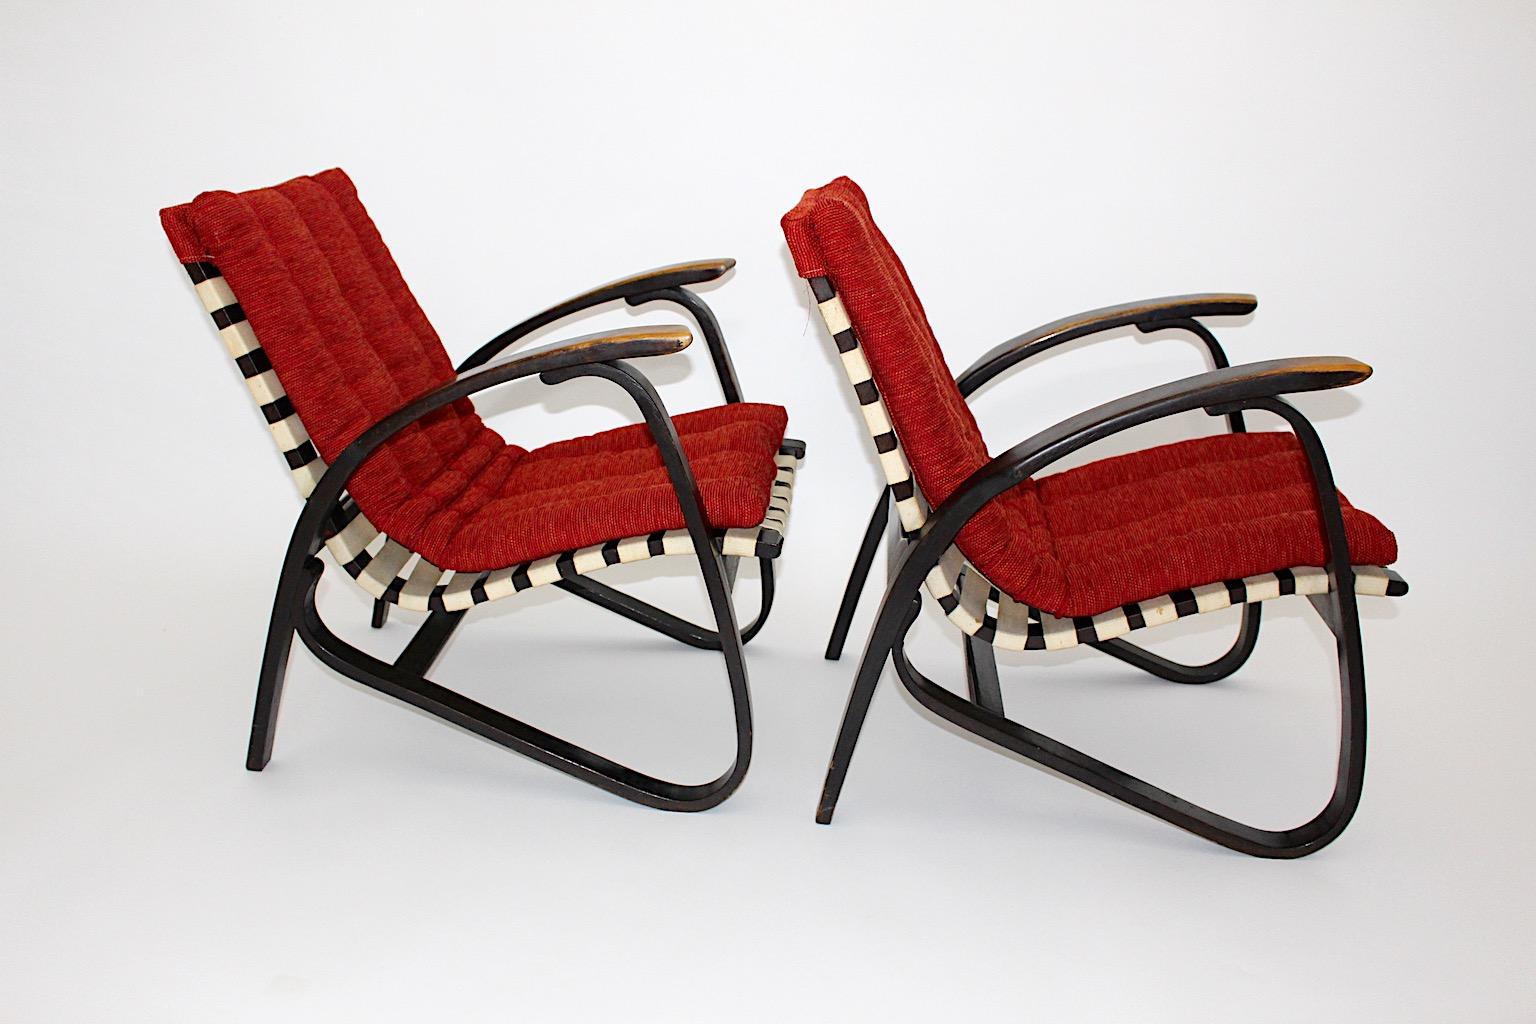 Paire de chaises longues vintage Art Deco avec revêtement rouge, conçues par Jan Vanek (1891 - 1962, Rép. tchèque) et produites par Up Závody.
Une étonnante paire de chaises de salon autoportantes en bois courbé avec un revêtement textile structuré